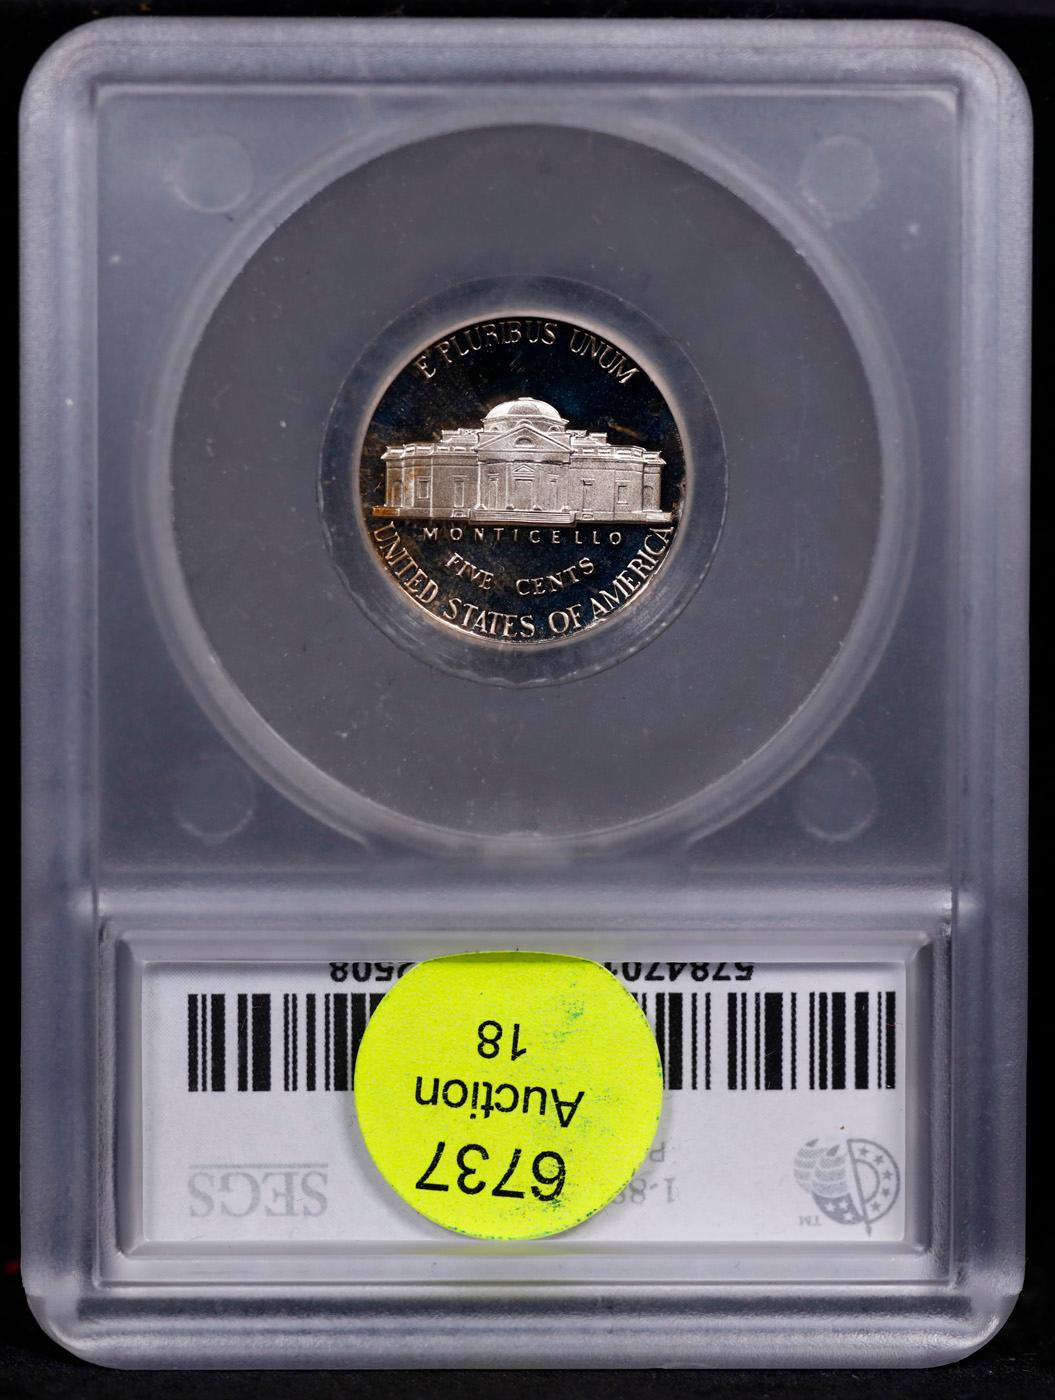 Proof 1992-s Jefferson Nickel 5c Graded pr70 DCAM BY SEGS